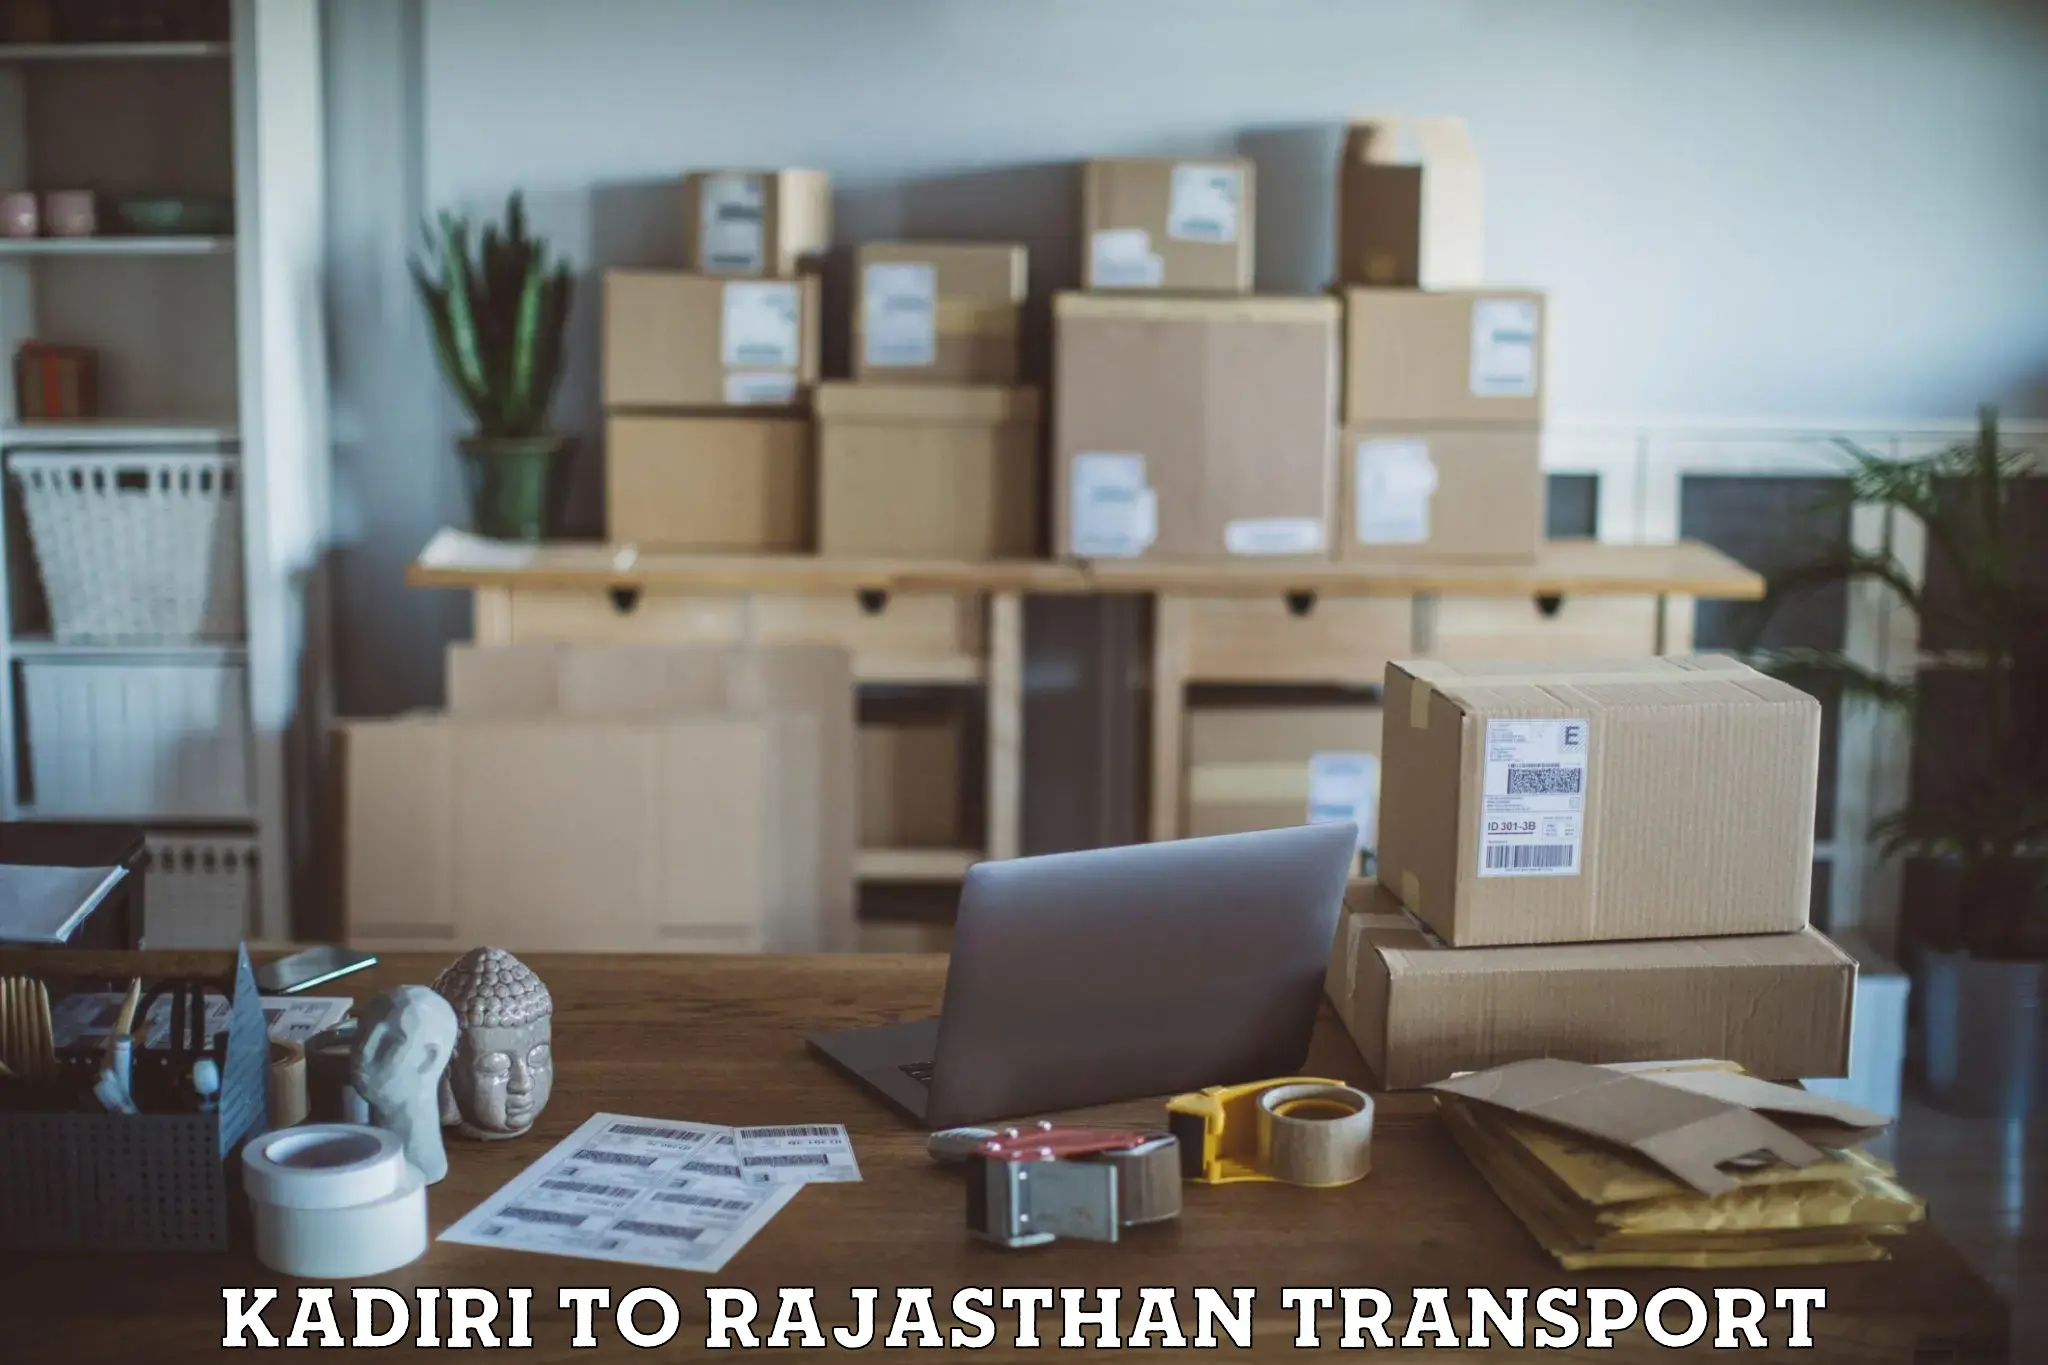 Daily transport service Kadiri to Asind